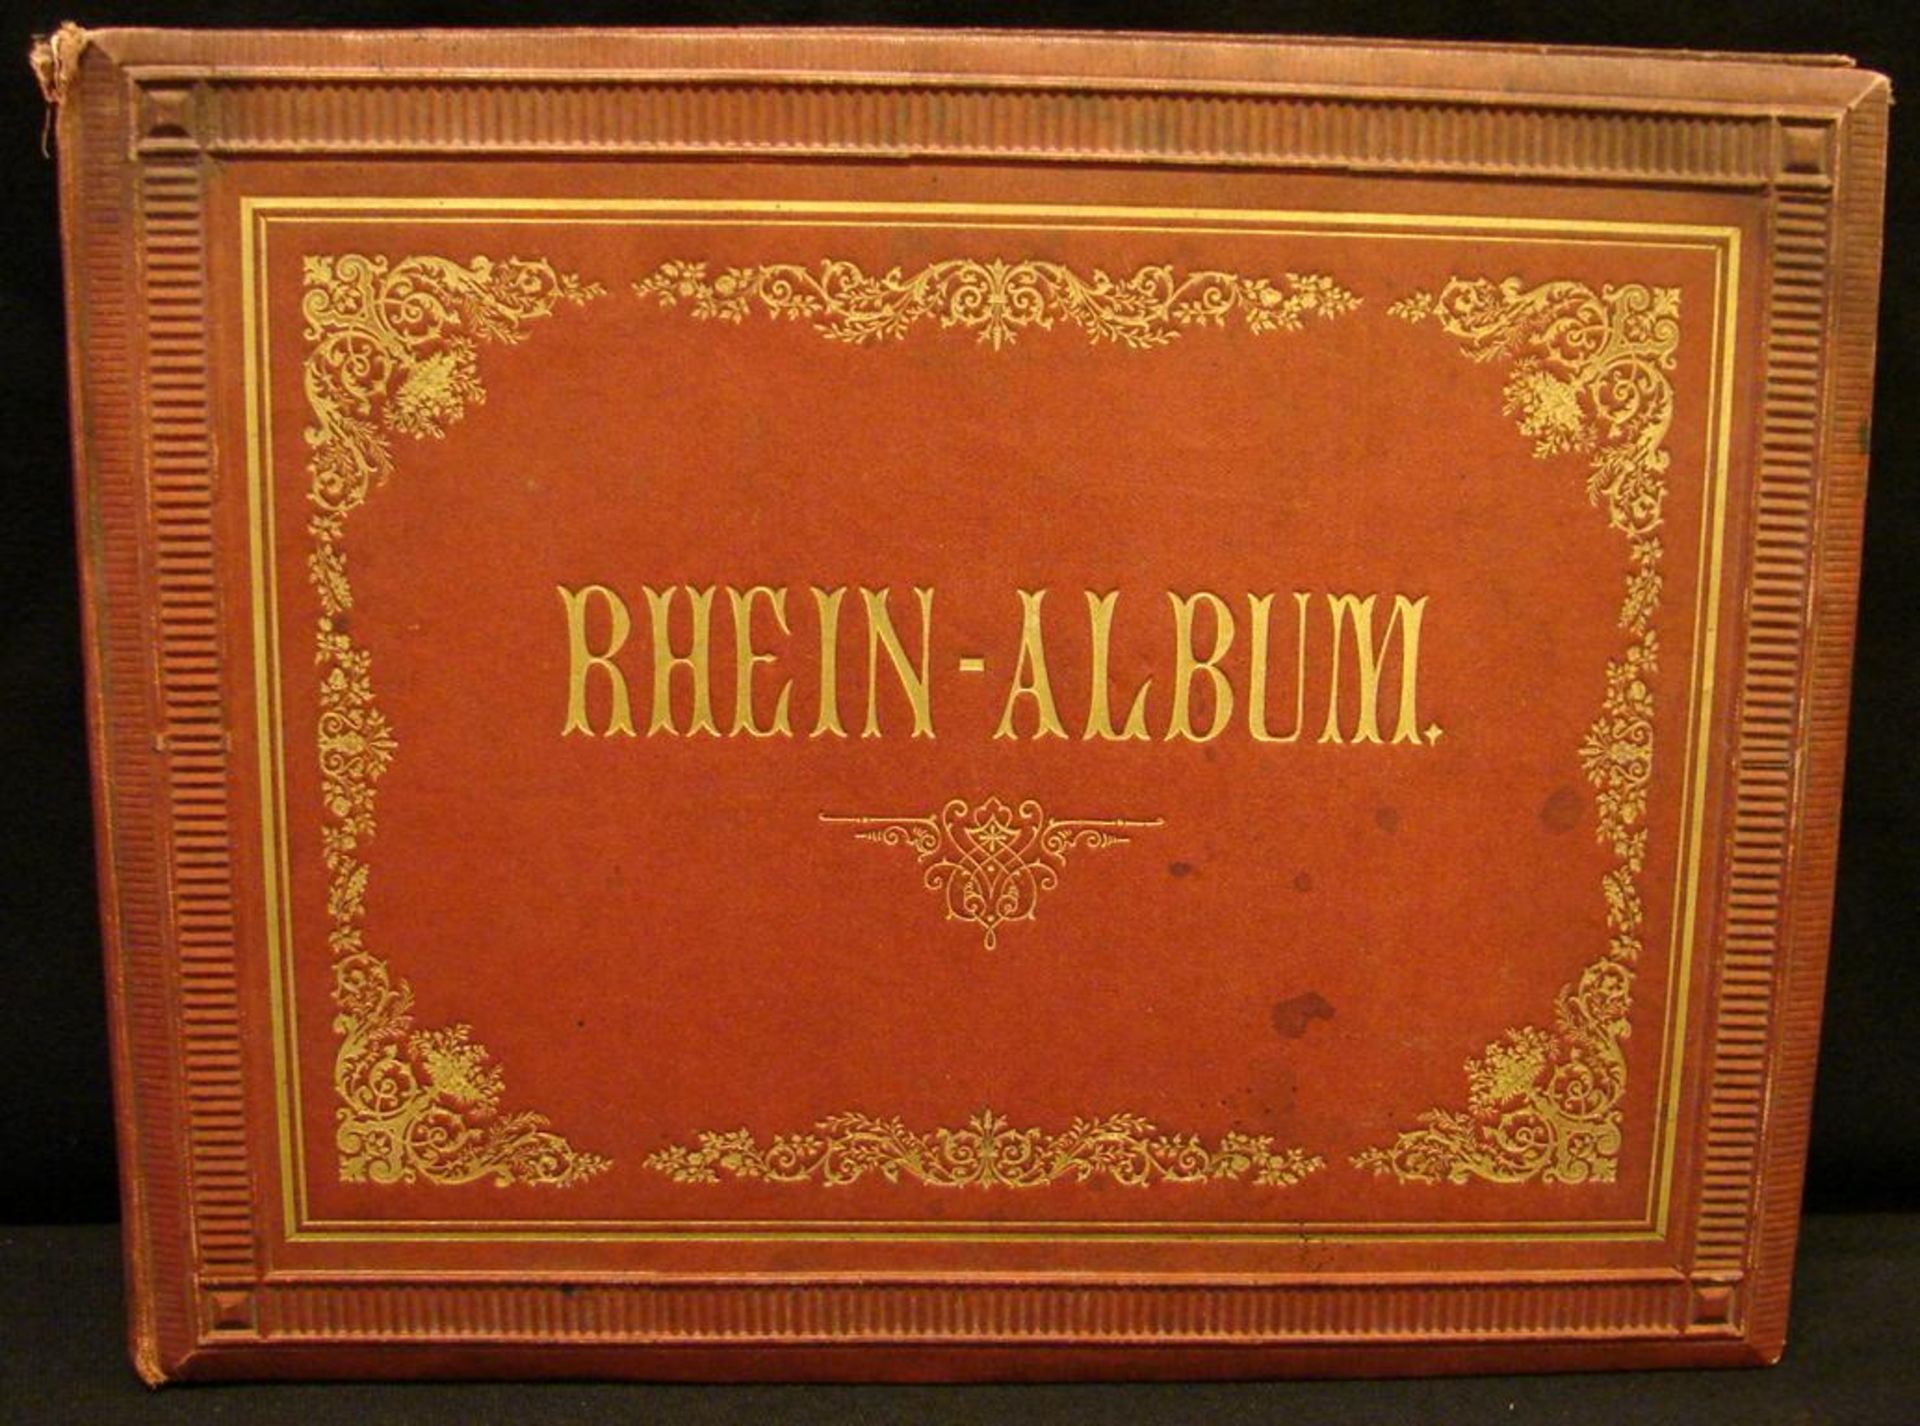 Rhein-Album mit zahlreichen Stichen, Stockflecken- - -22.00 % buyer's premium on the hammer